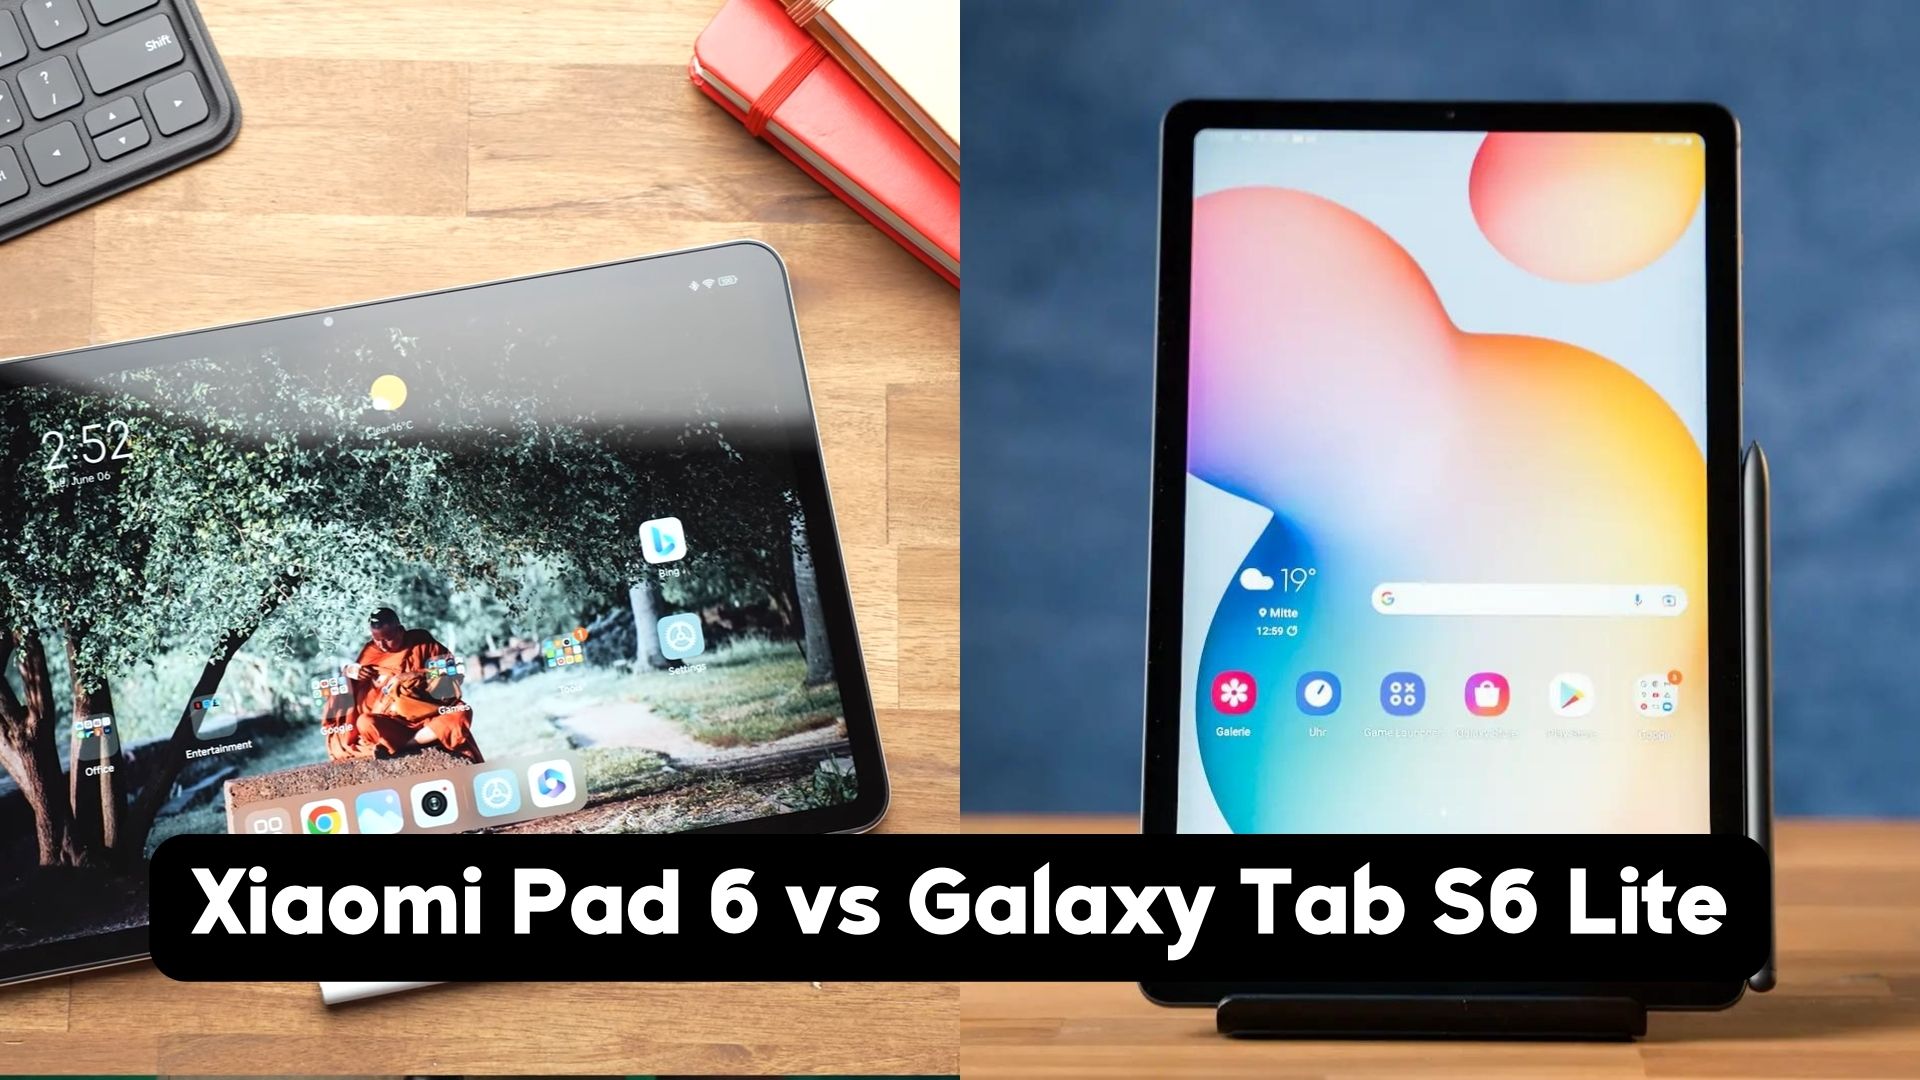 Xiaomi Pad 6 vs Galaxy Tab S6 Lite